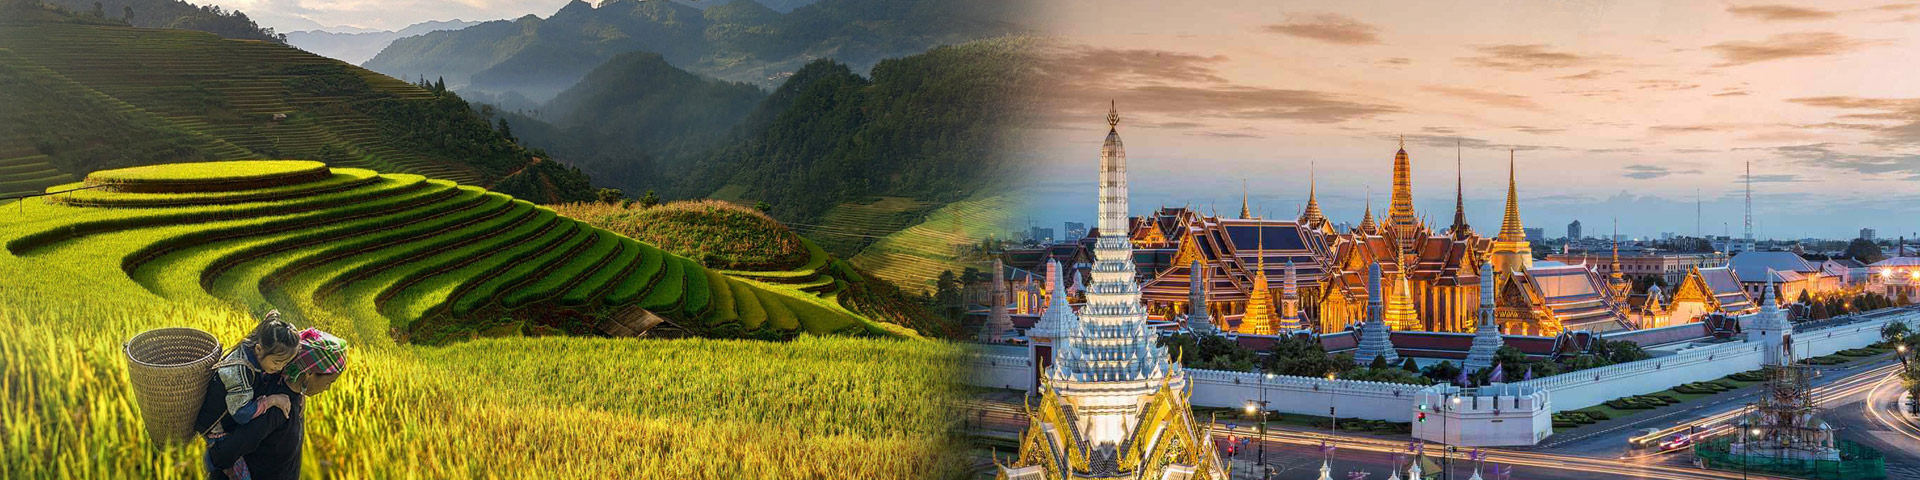 thailand and vietnam trip